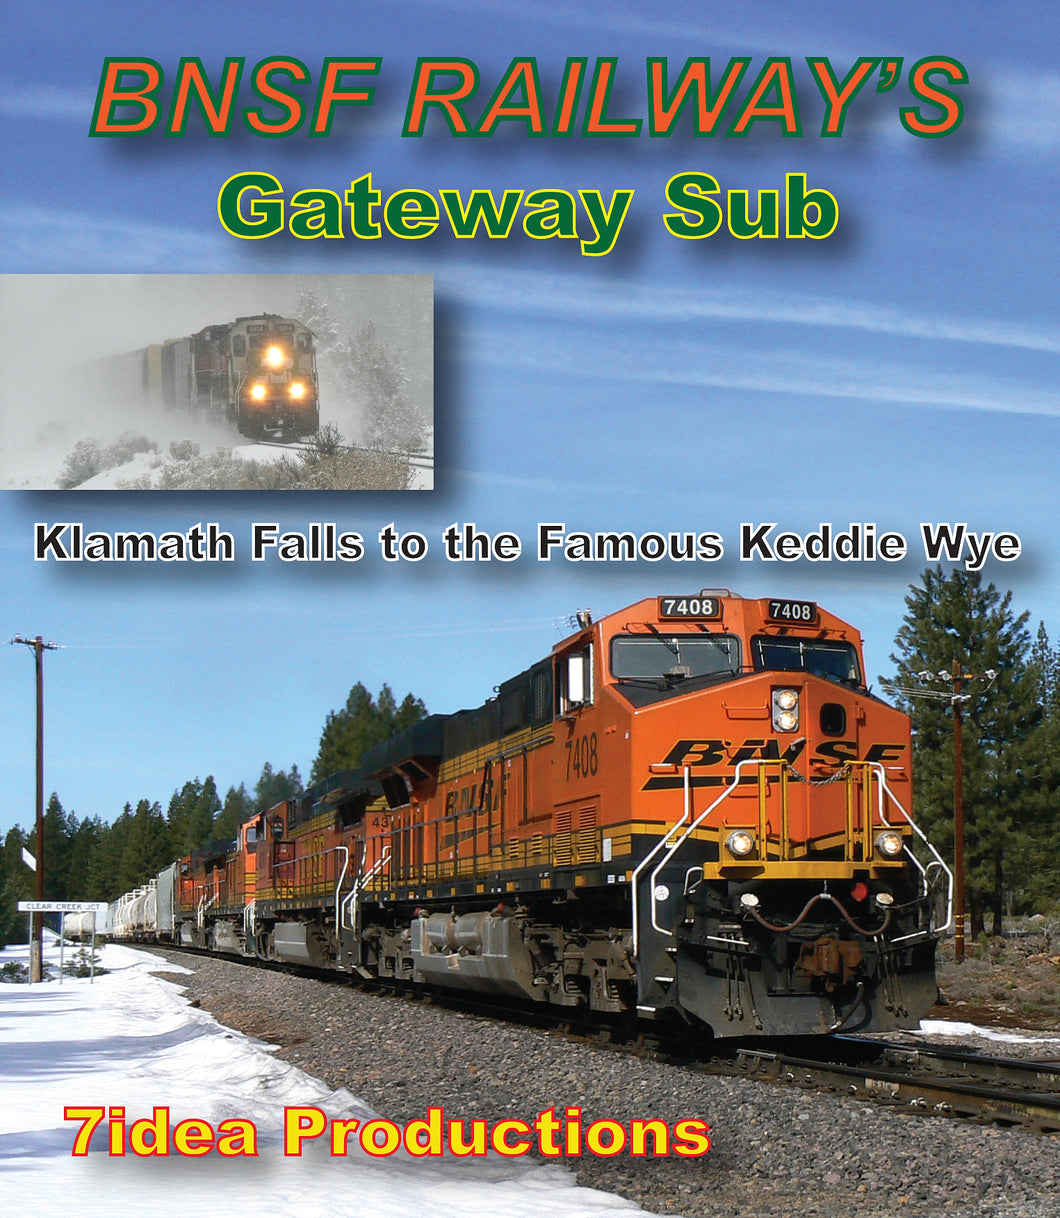 BNSF Railway's Gateway Sub